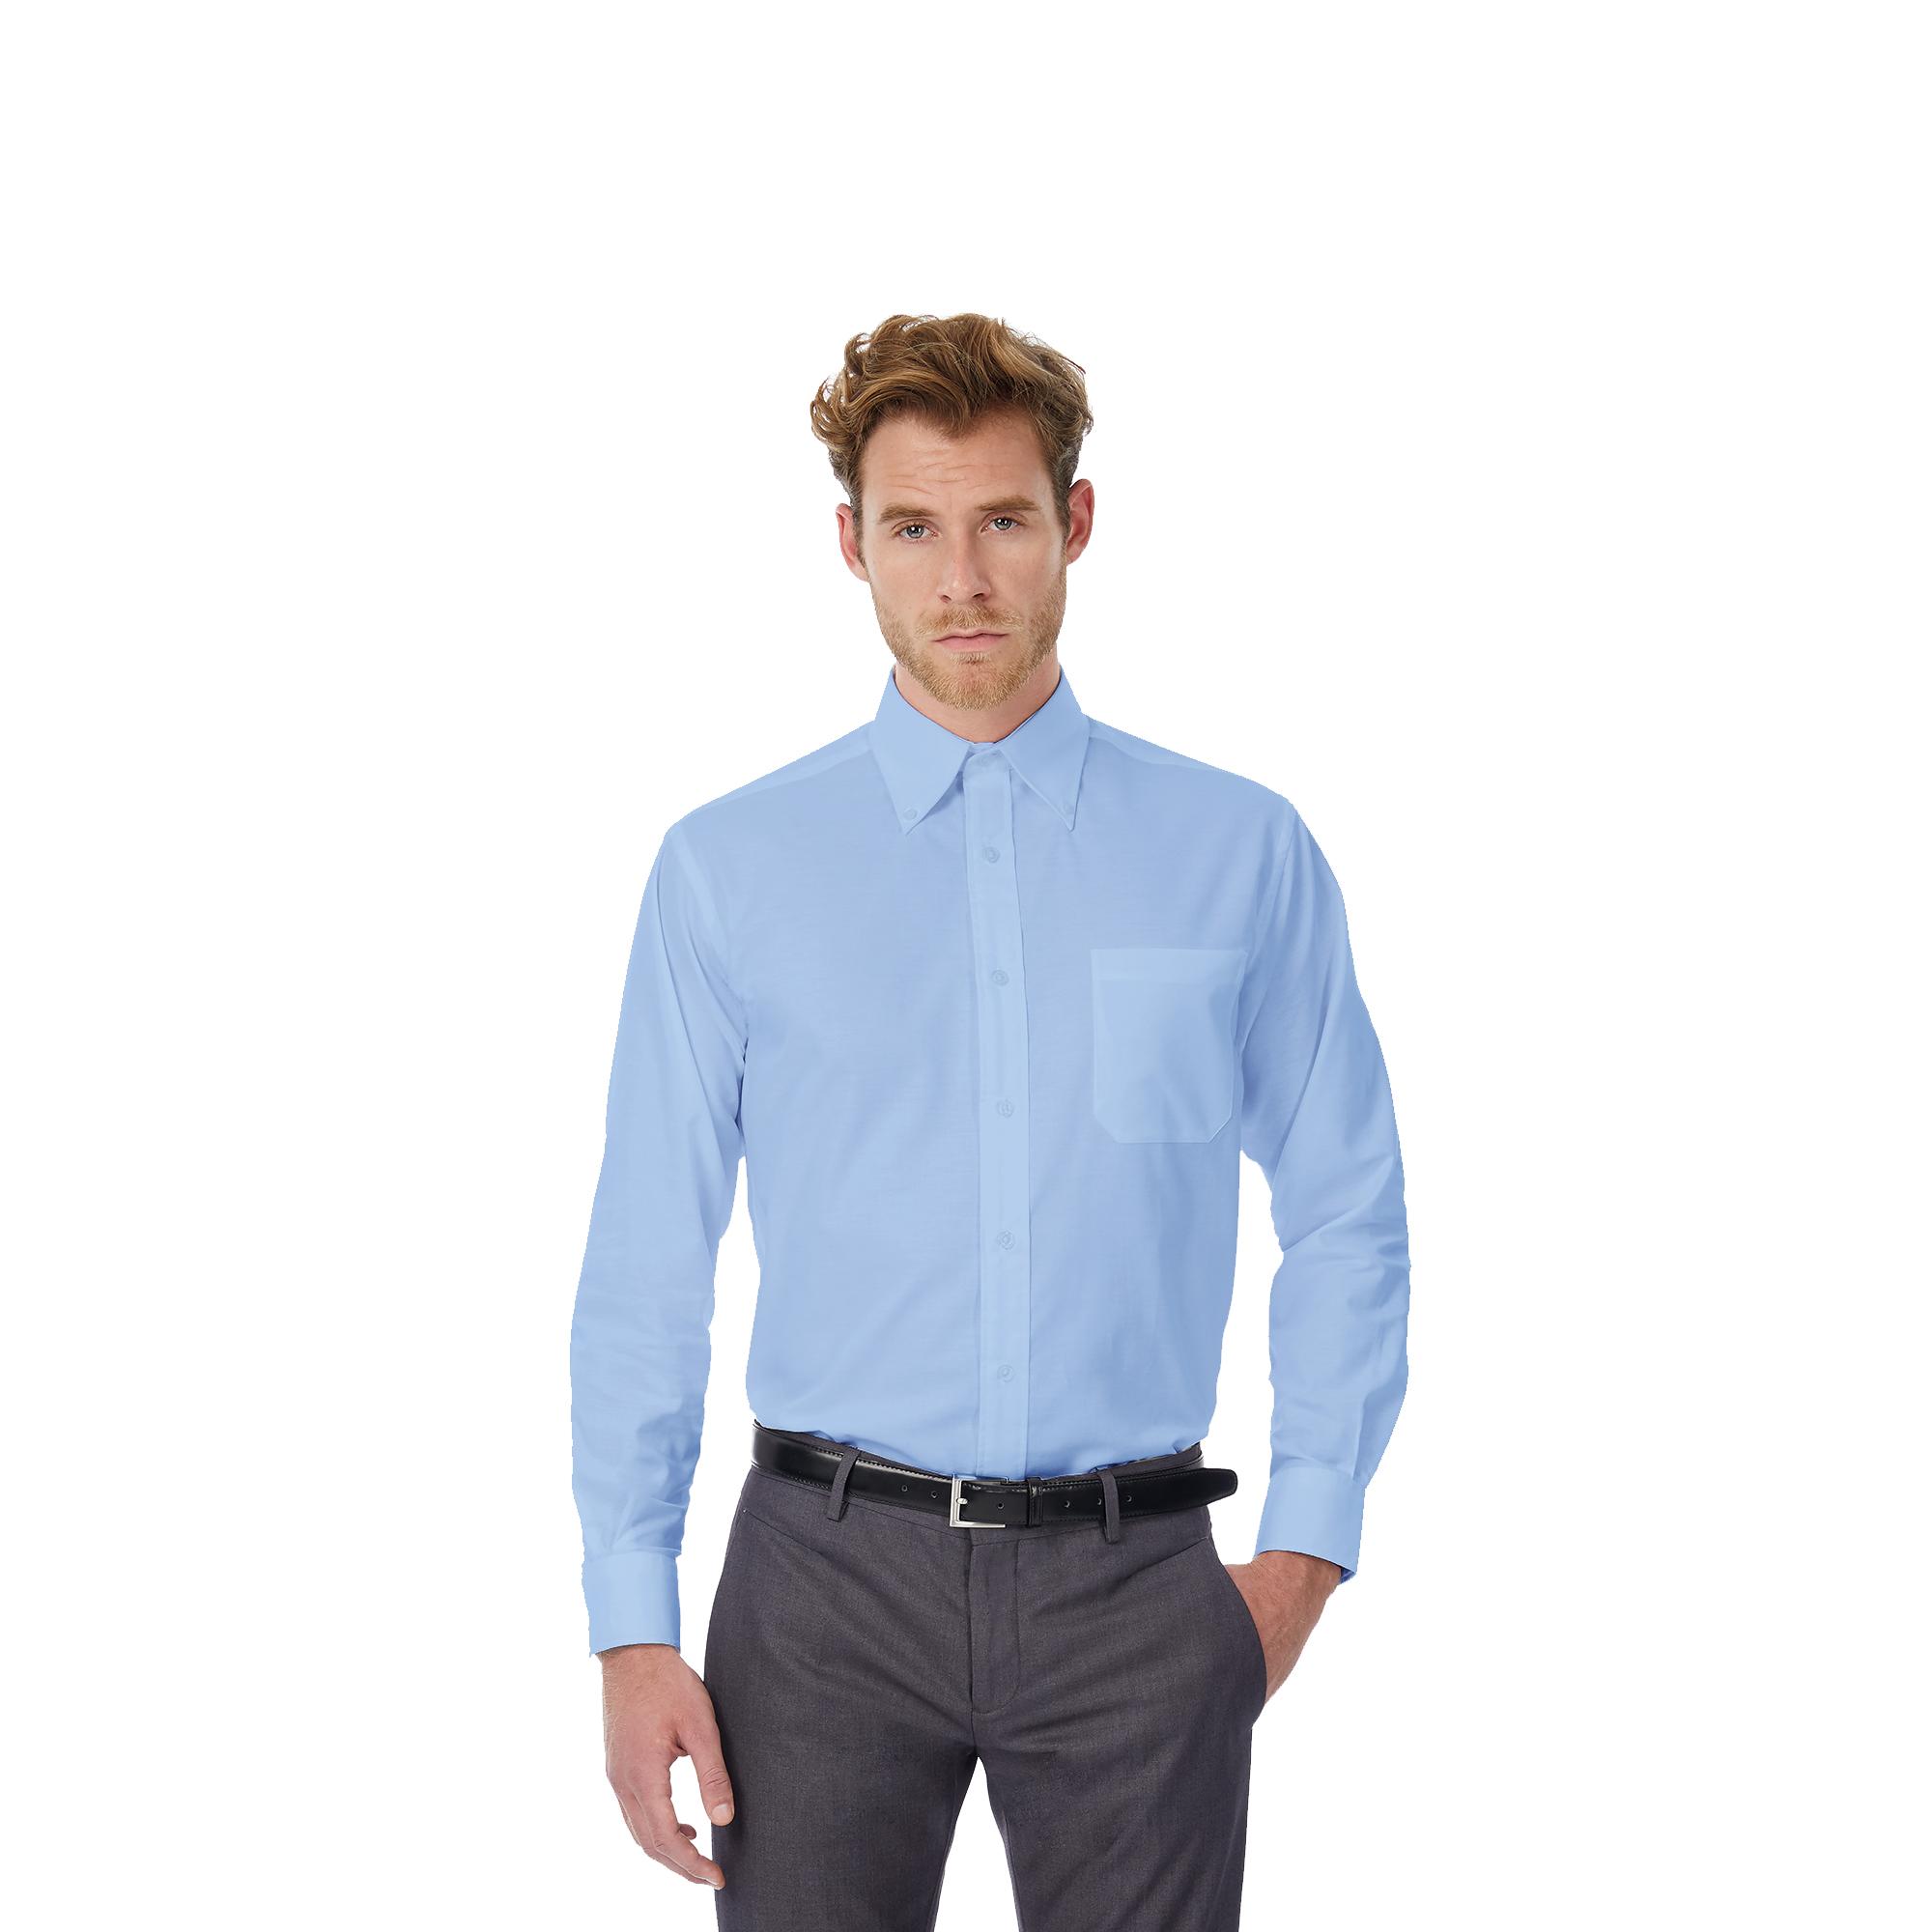 Рубашка мужская с длинным рукавом LSL/men, цвет темно-красный - купить оптом